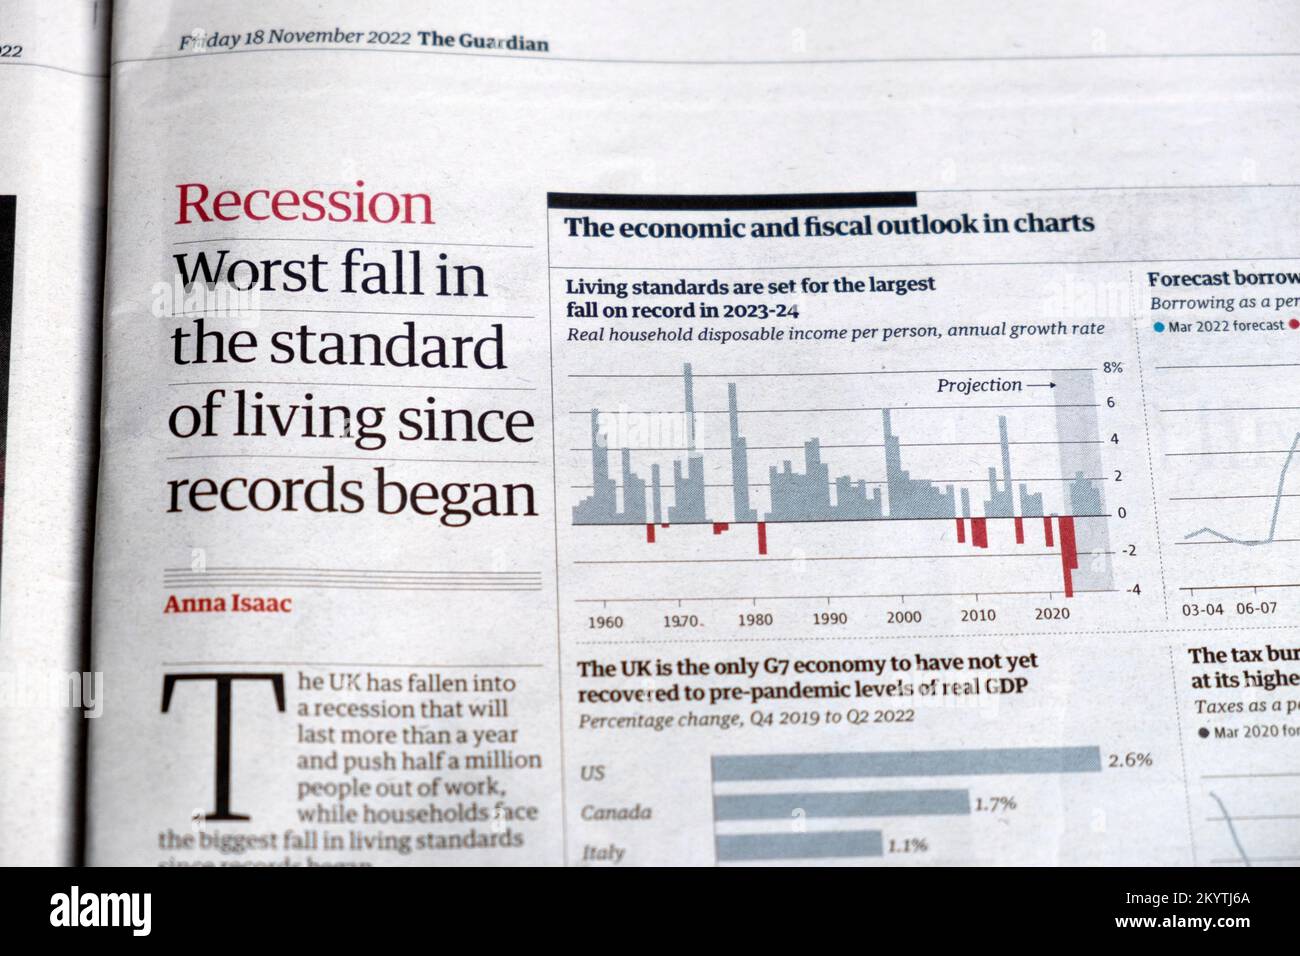 "Recessione peggiore fallire nel tenore di vita da quando sono iniziati i record" Guardian giornale titolo economia britannica taglio 18 novembre 2022 Londra UK Foto Stock